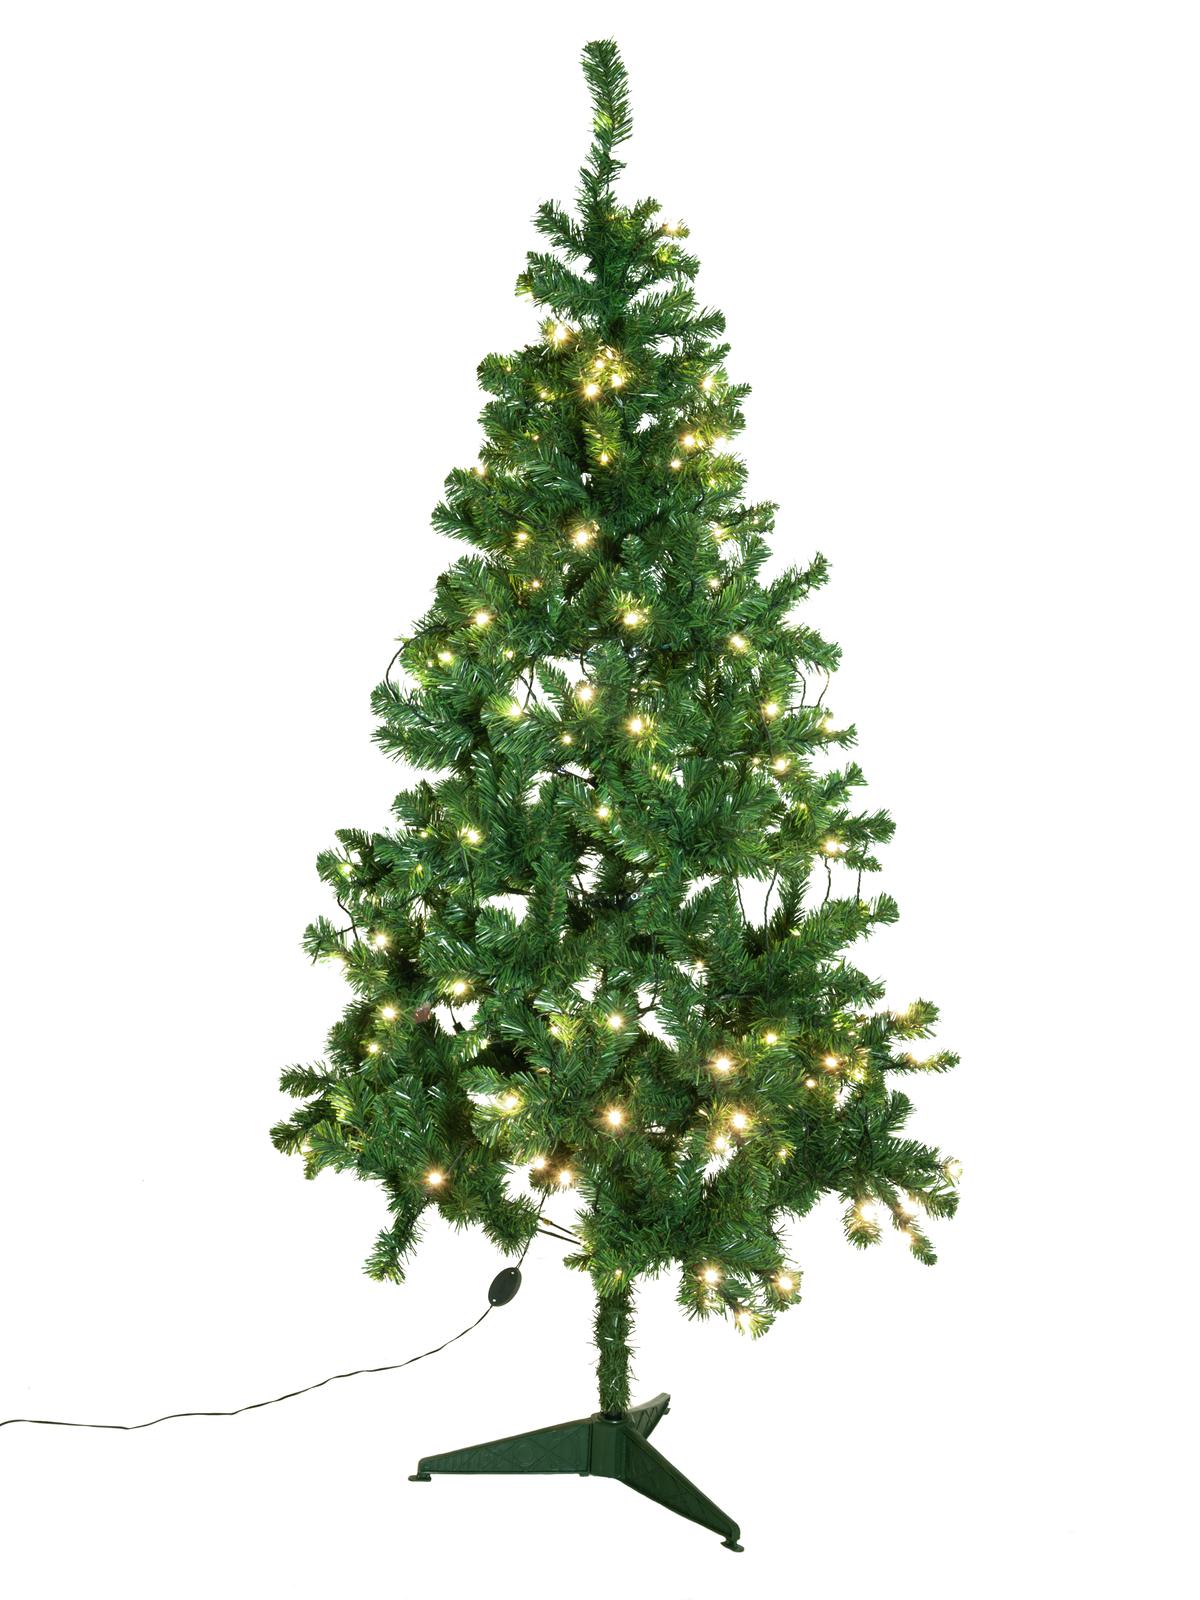 Umělý vánoční stromek s LED osvětlením, 180 cm